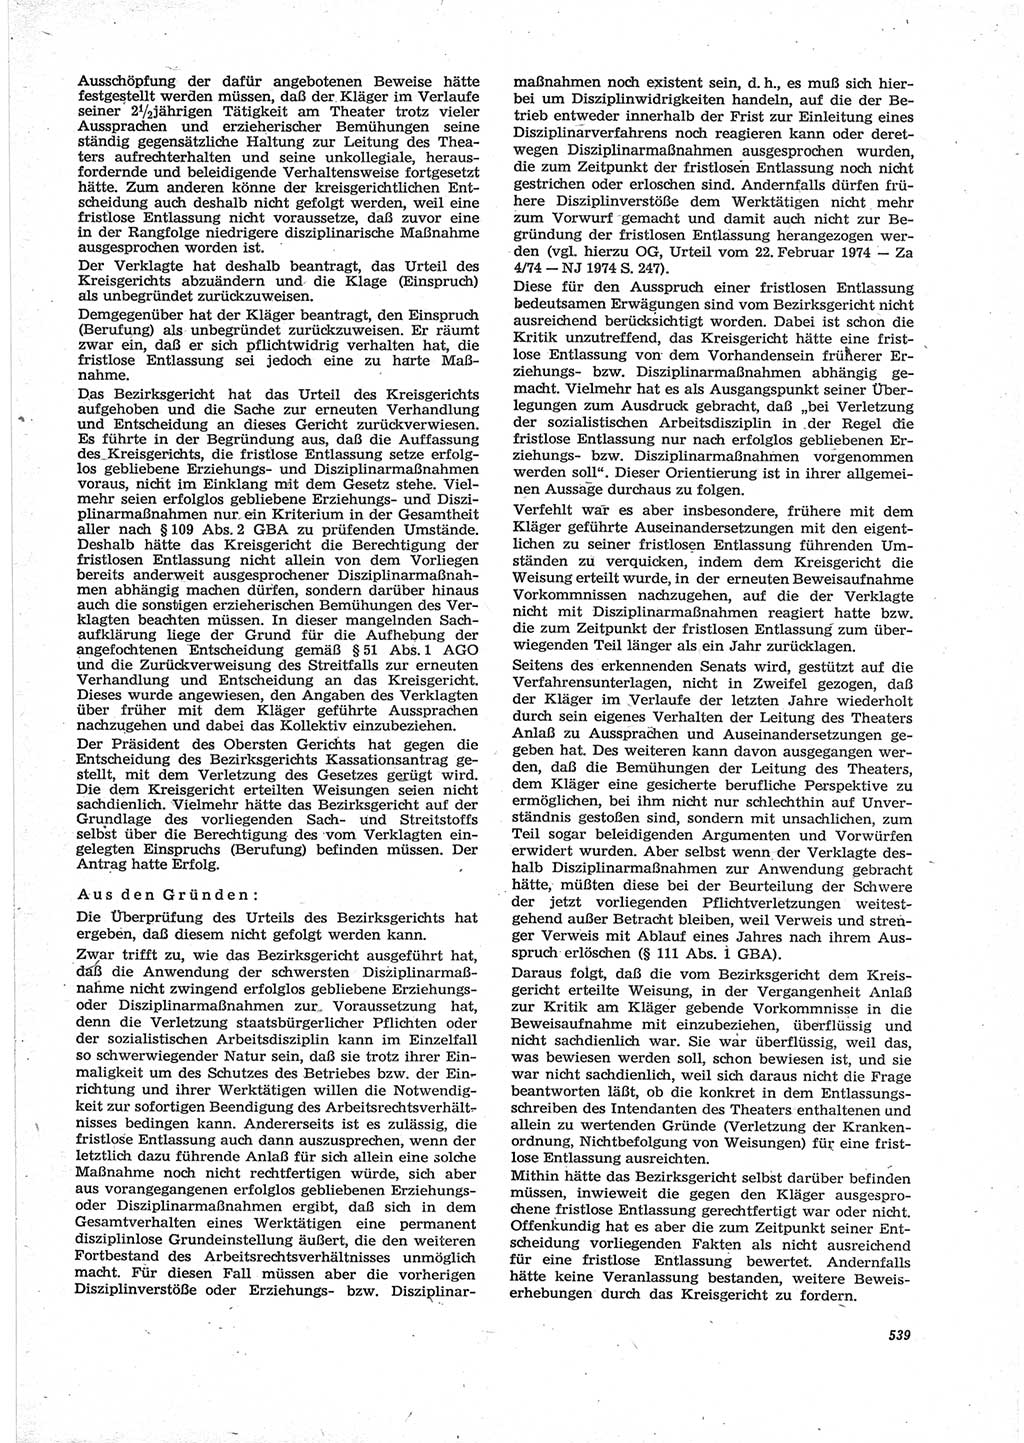 Neue Justiz (NJ), Zeitschrift für Recht und Rechtswissenschaft [Deutsche Demokratische Republik (DDR)], 28. Jahrgang 1974, Seite 539 (NJ DDR 1974, S. 539)